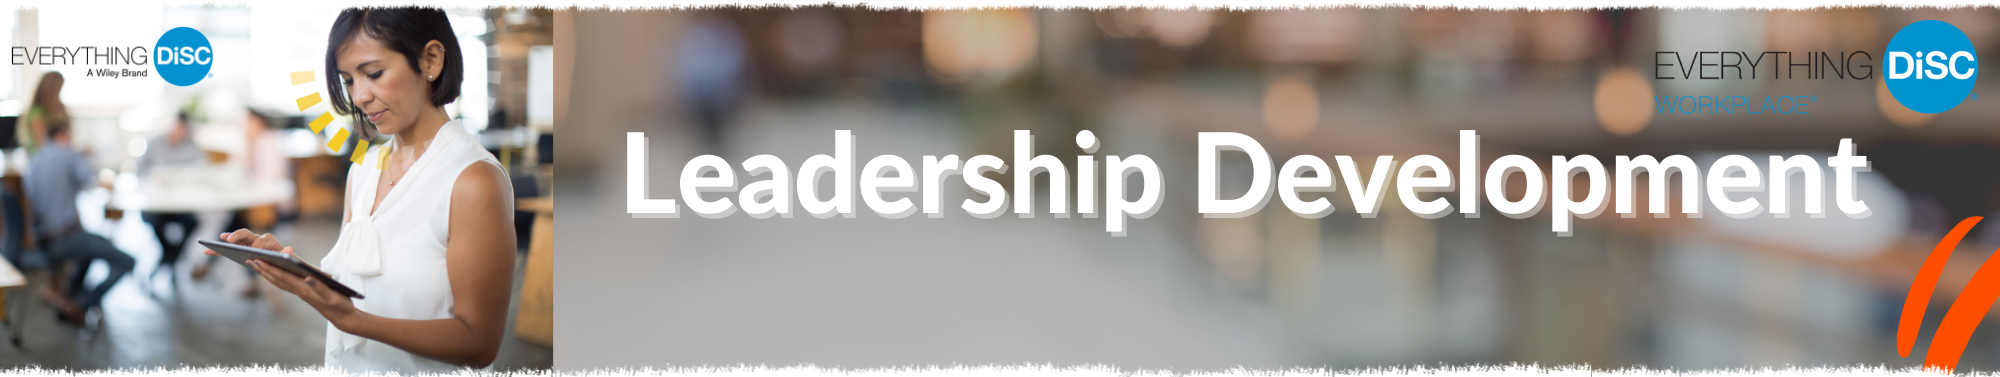 Banner Leadership Development